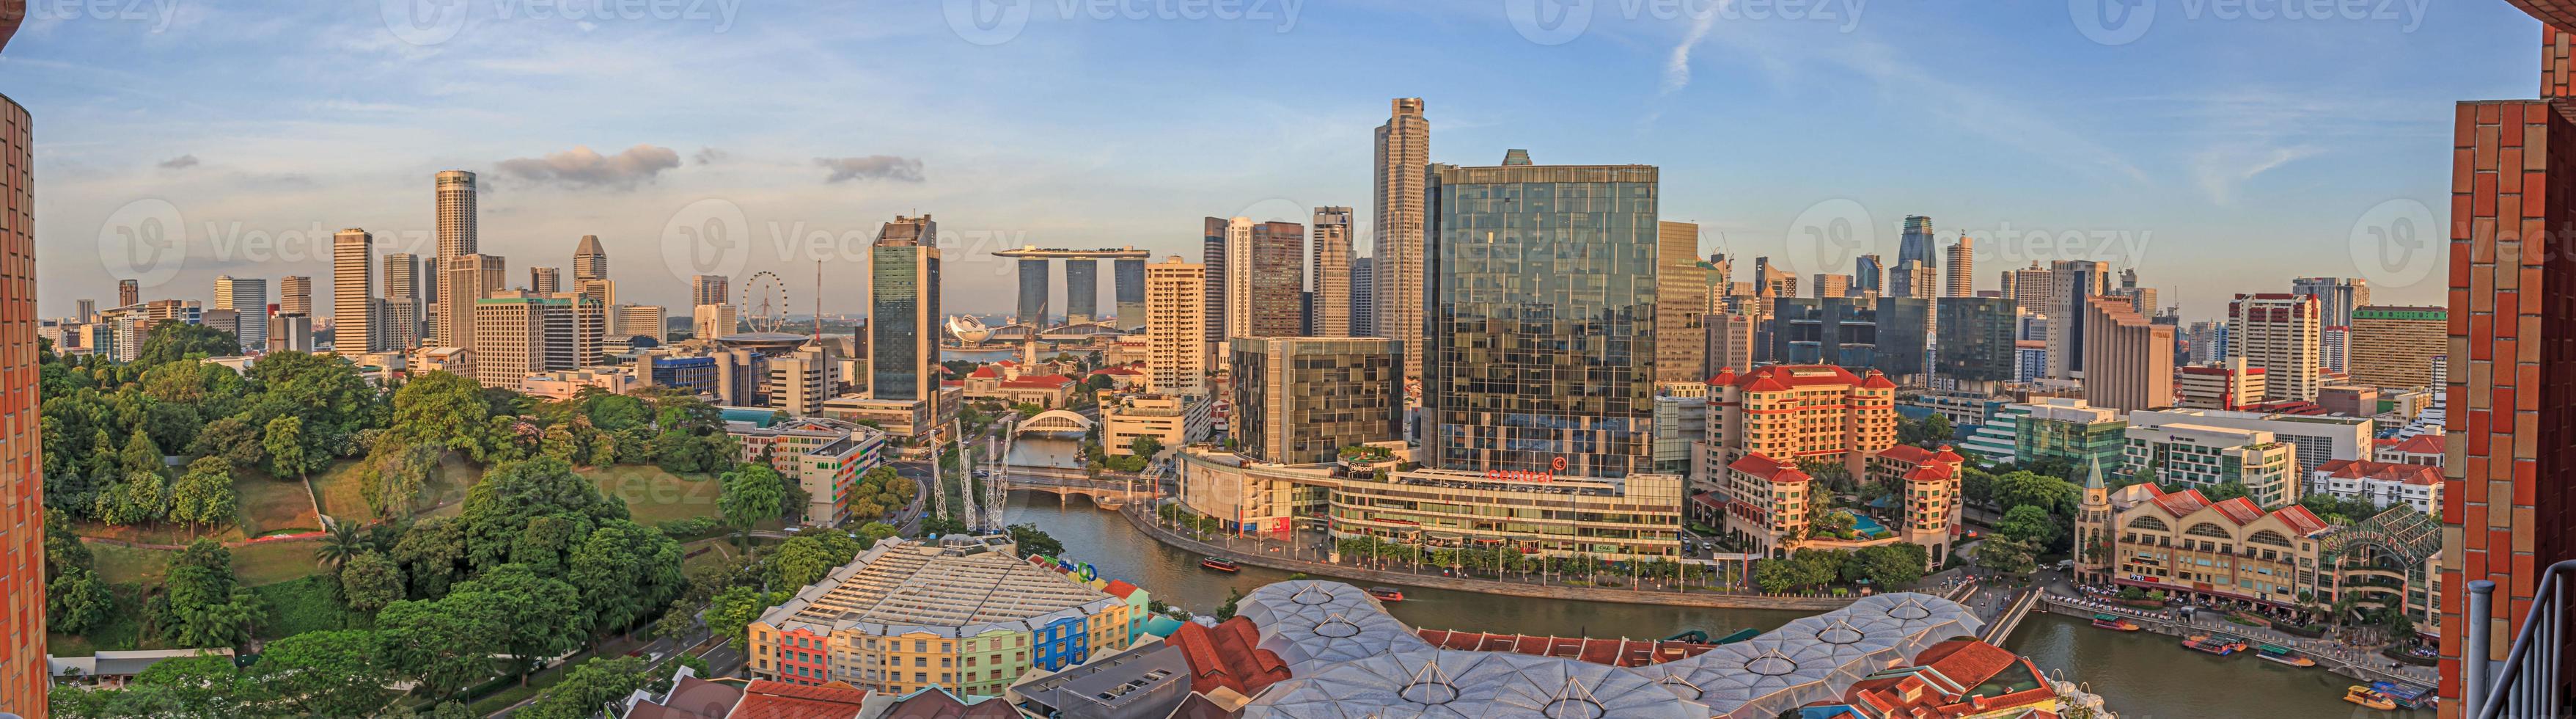 Panoramablick aus der Vogelperspektive auf die Skyline von Singapur und das Unterhaltungsviertel Clarke Quay foto